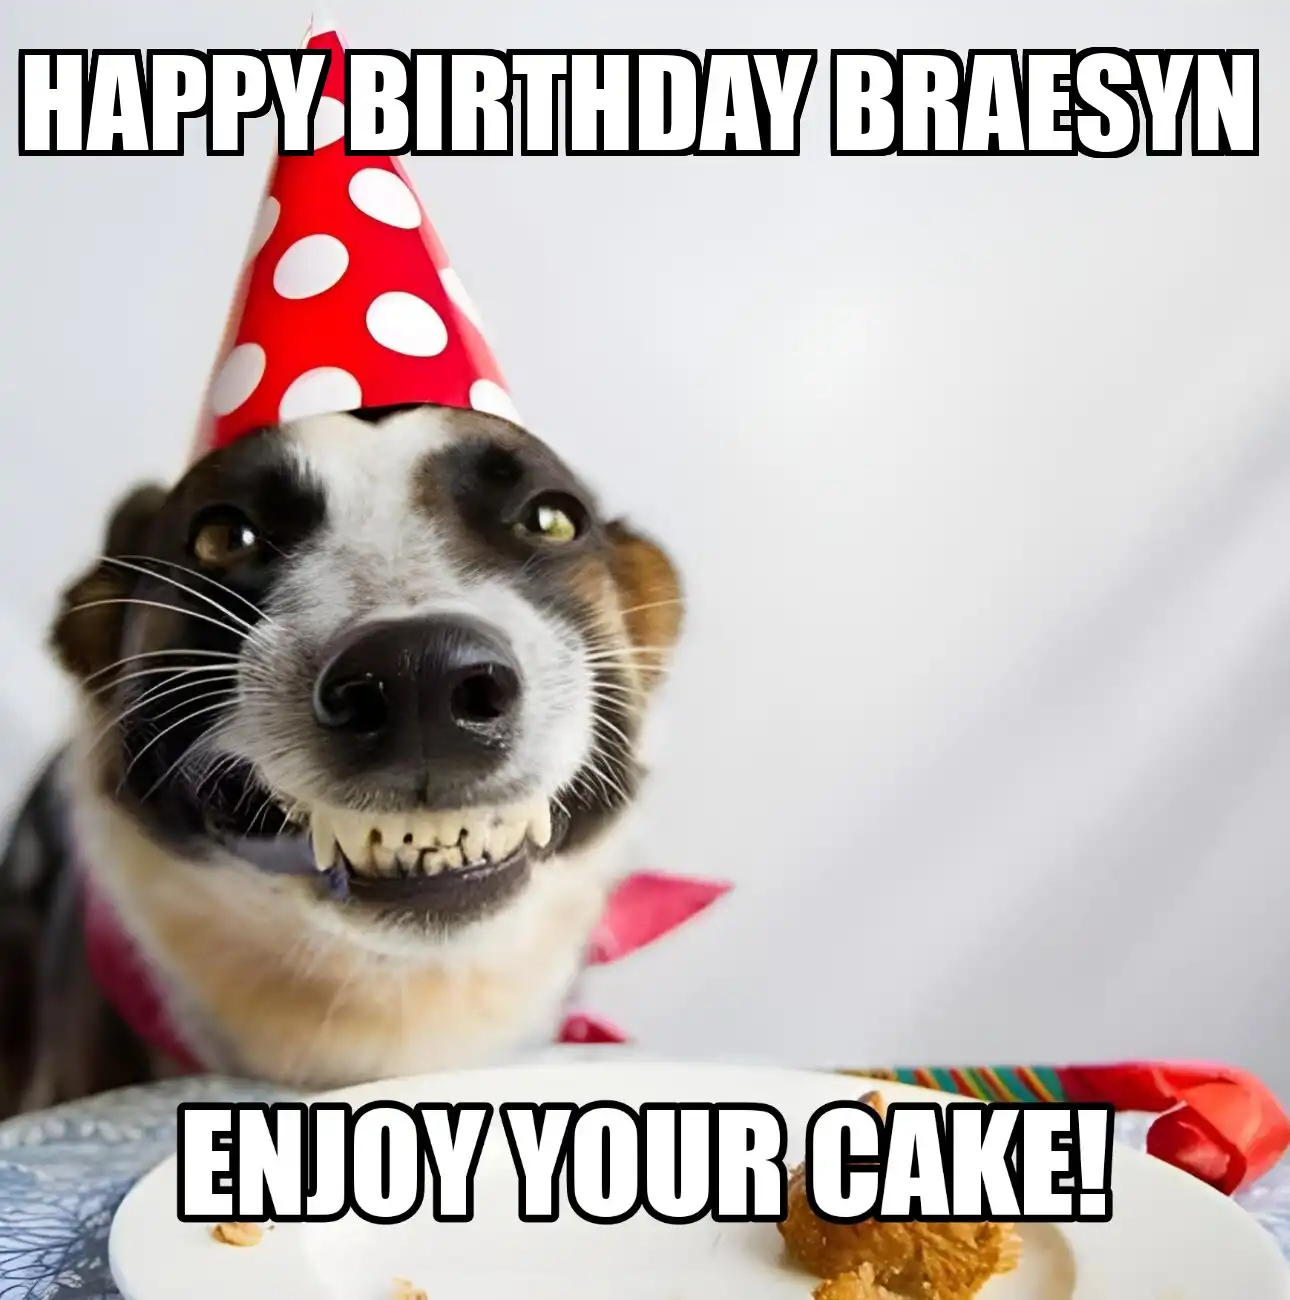 Happy Birthday Braesyn Enjoy Your Cake Dog Meme